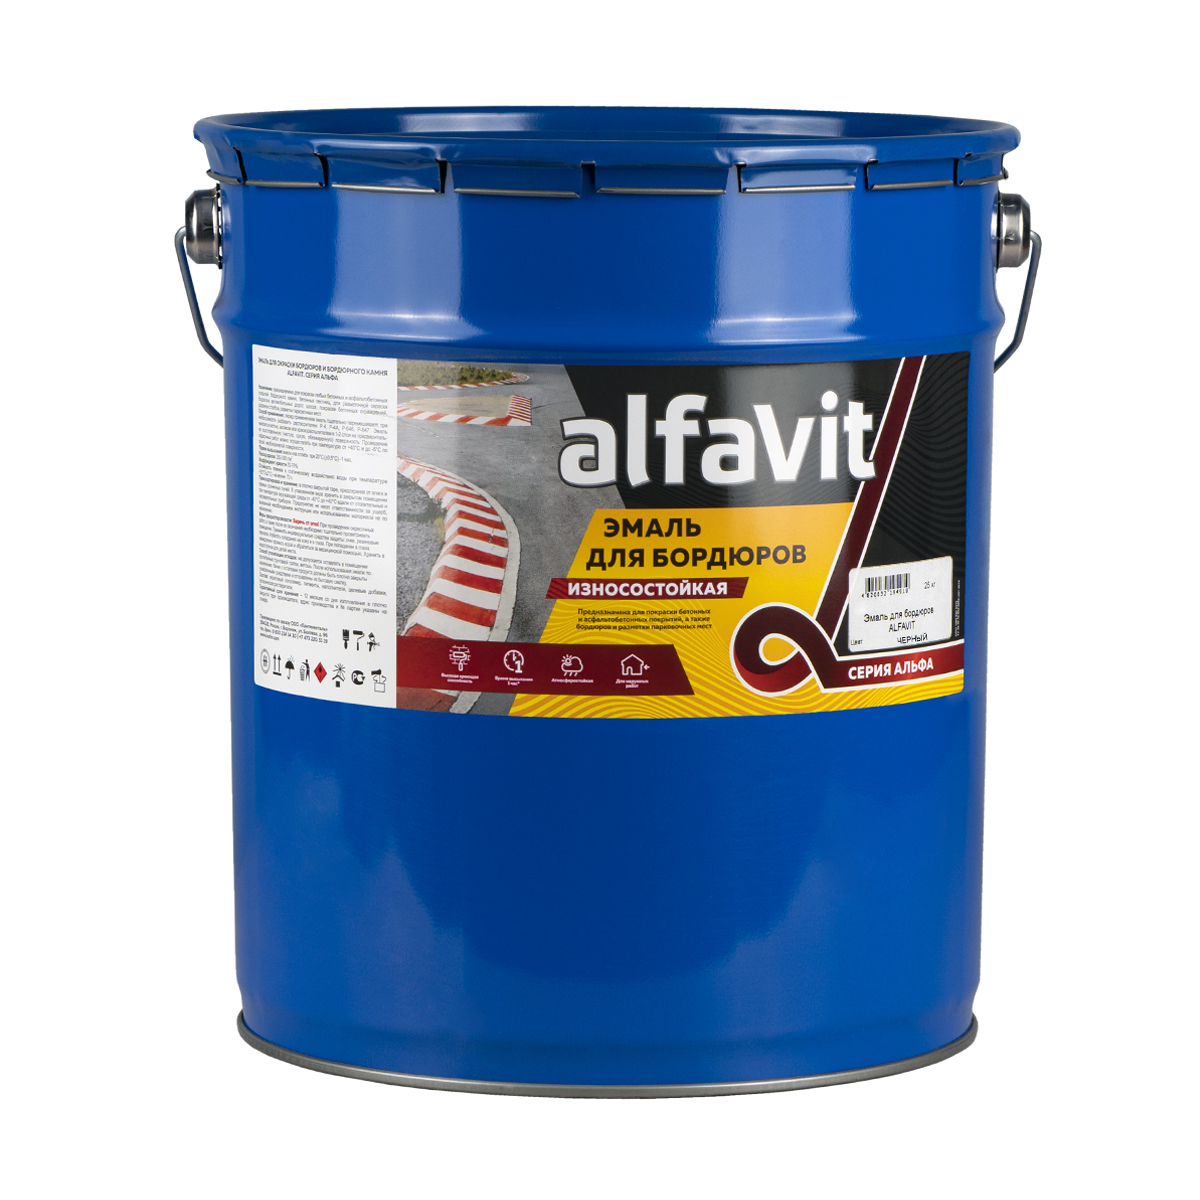 Эмаль для бордюров (износостойкая) "alfavit" черная 25 кг (1) серия альфа